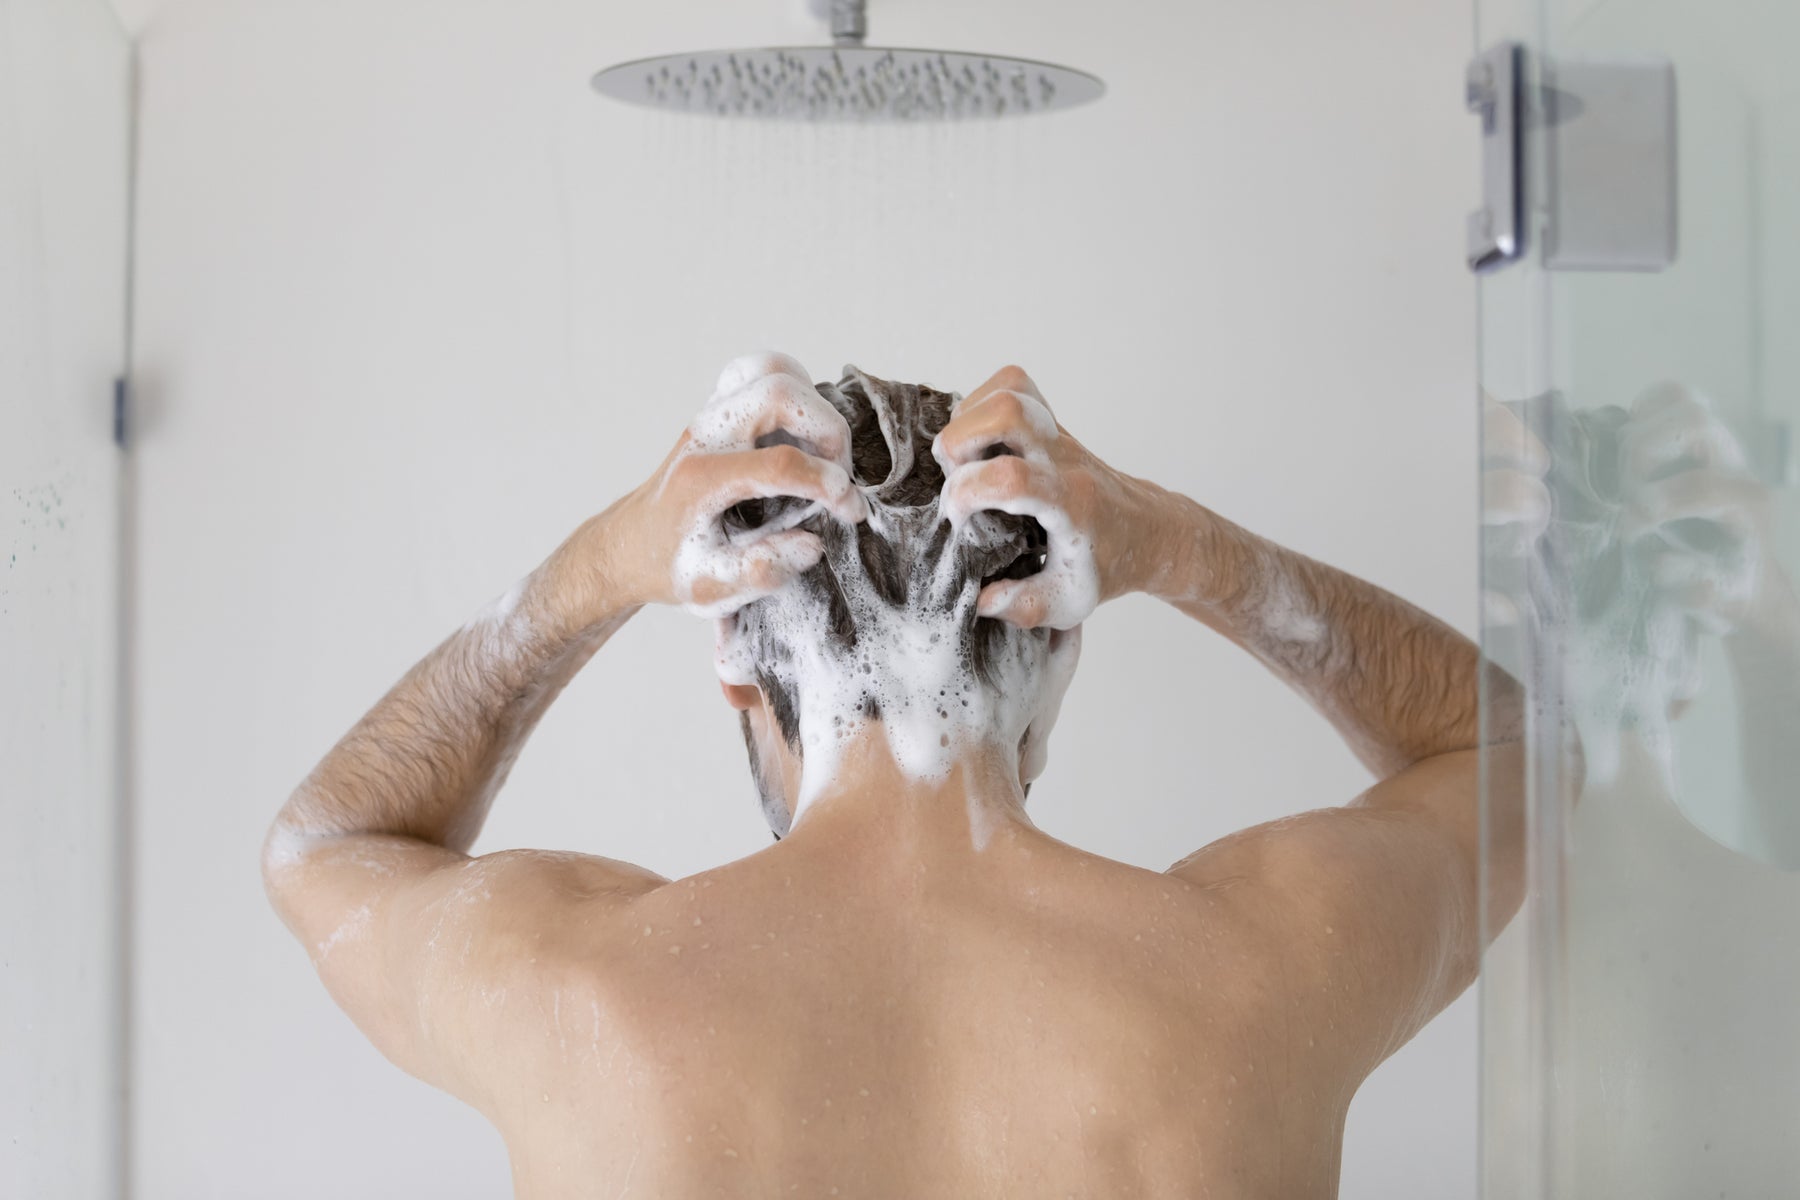 Hochwertige Antischuppen Shampoos im Test